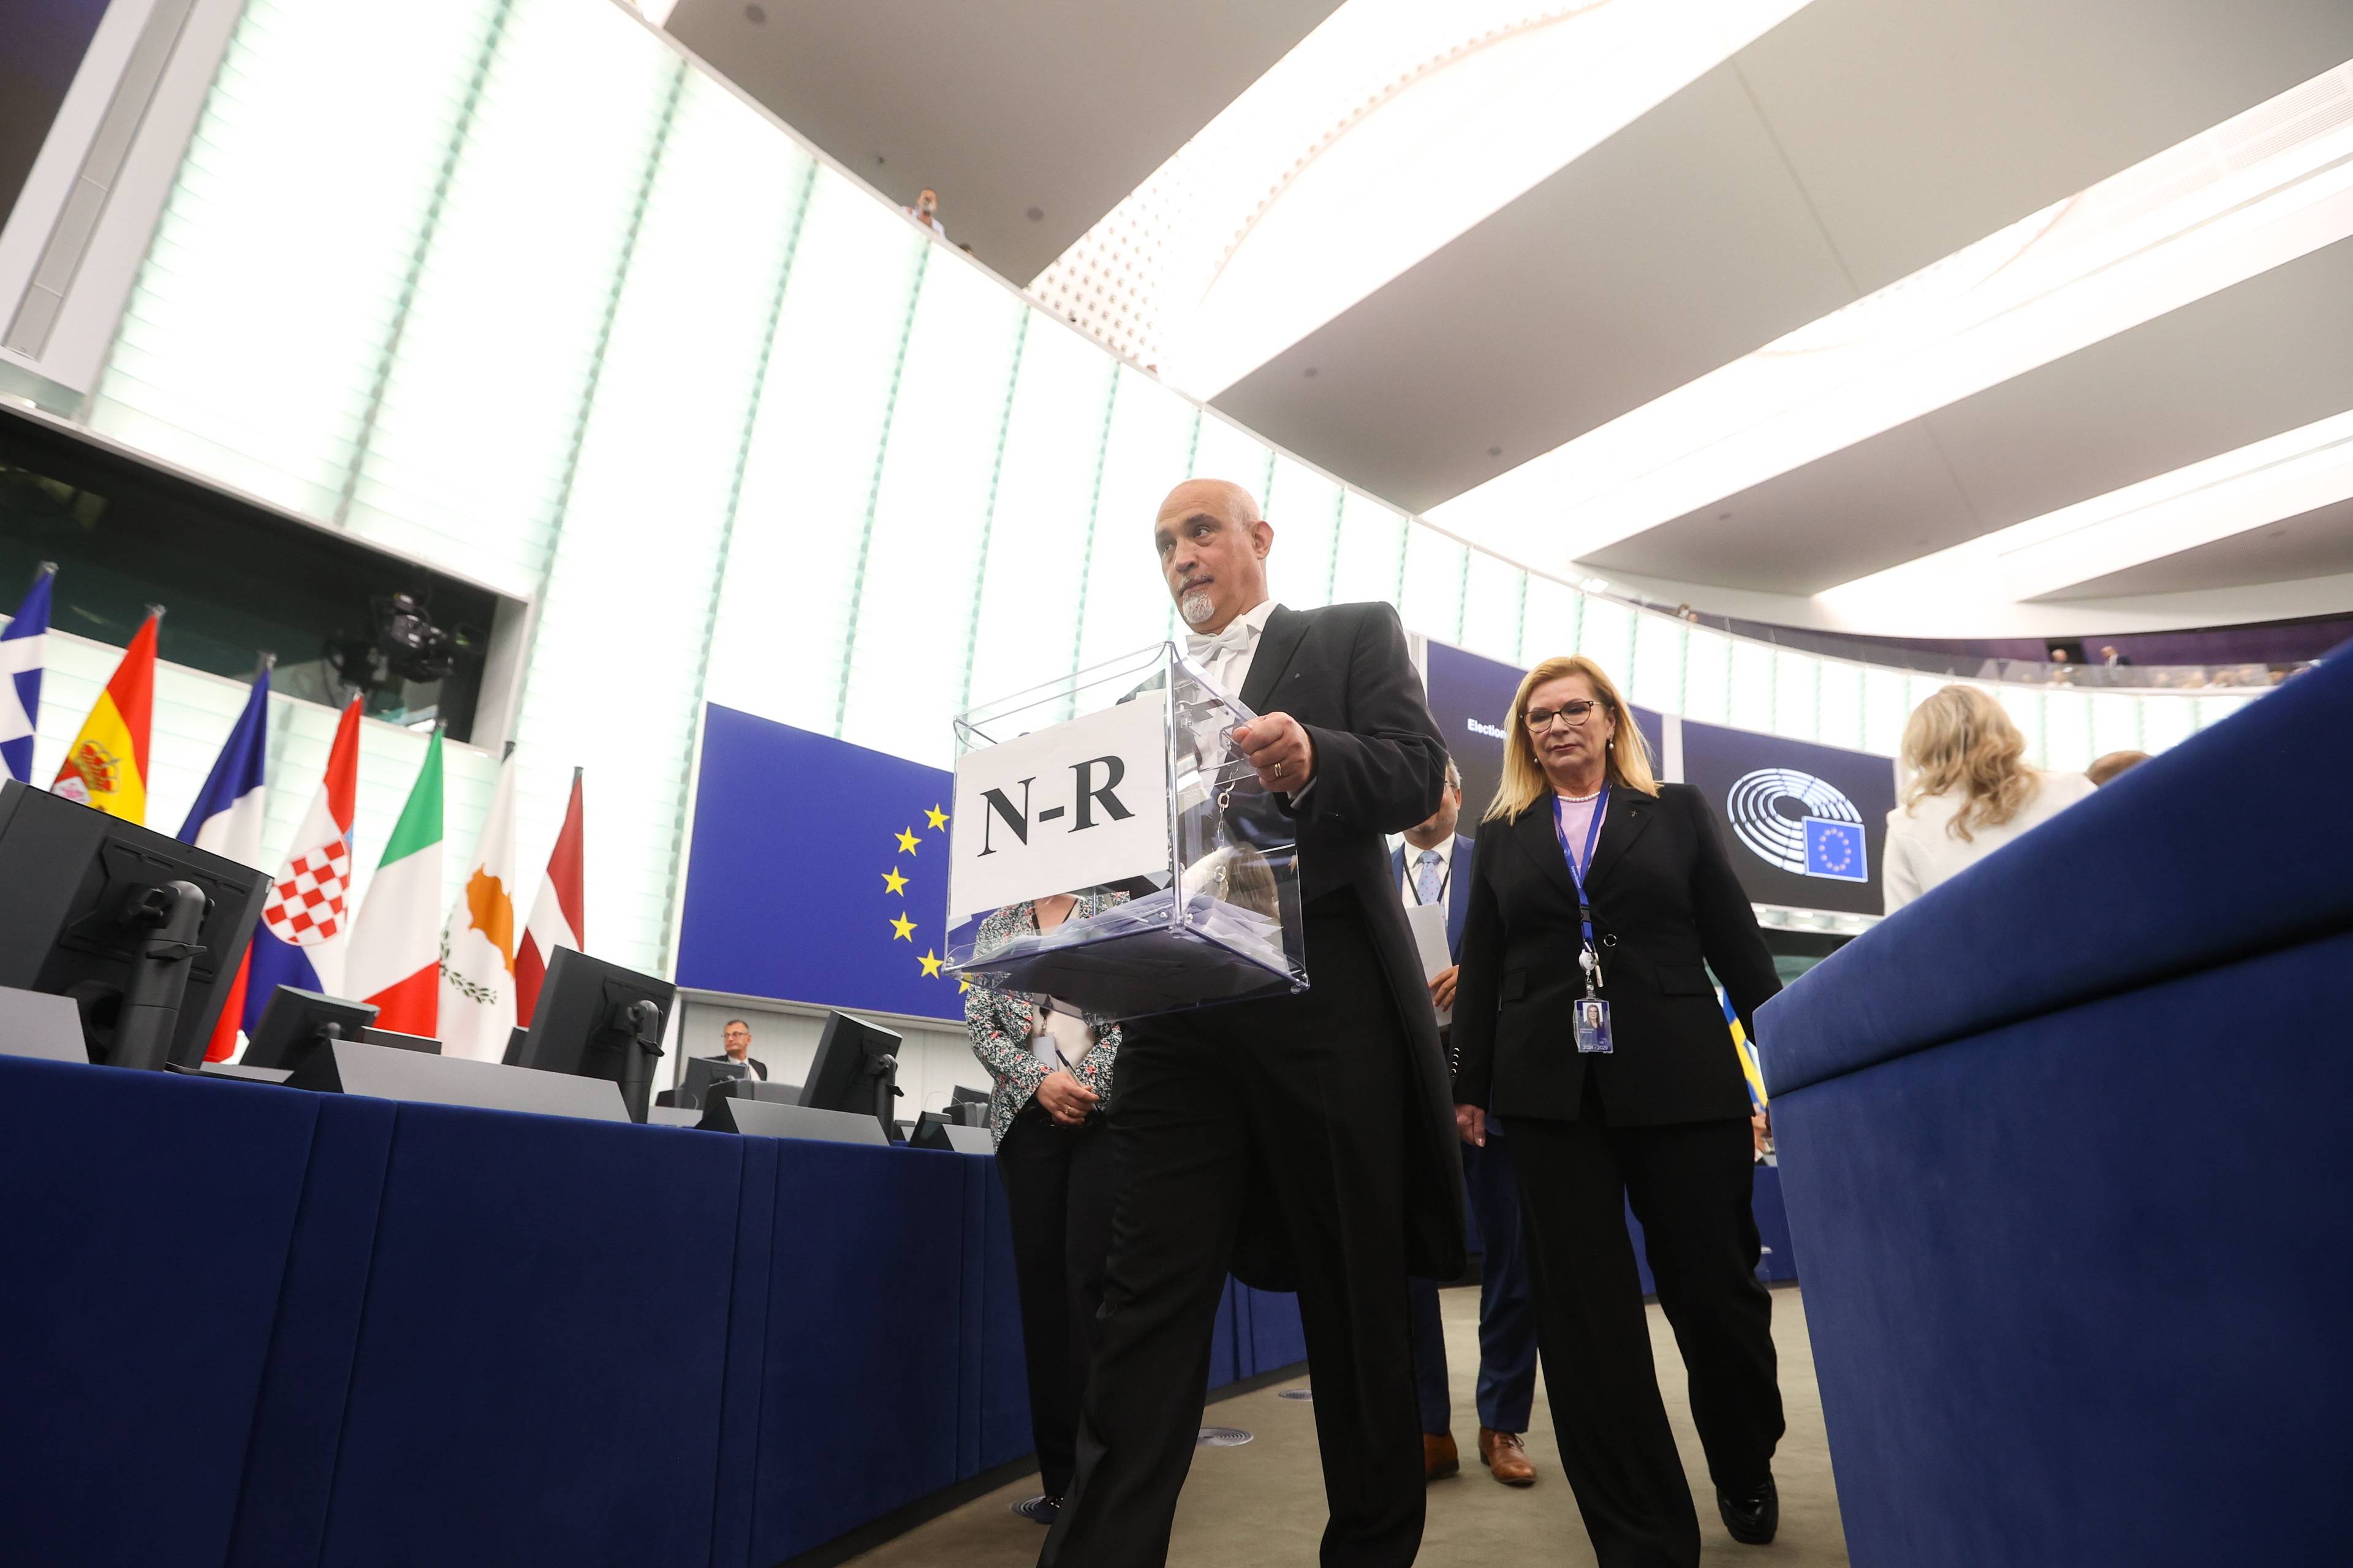 Mężczyzna w czarnym fraku niesie przezroczystą urnę wyborczą, w tle flaga europejska i flagi narodowe państw członkowskich UE